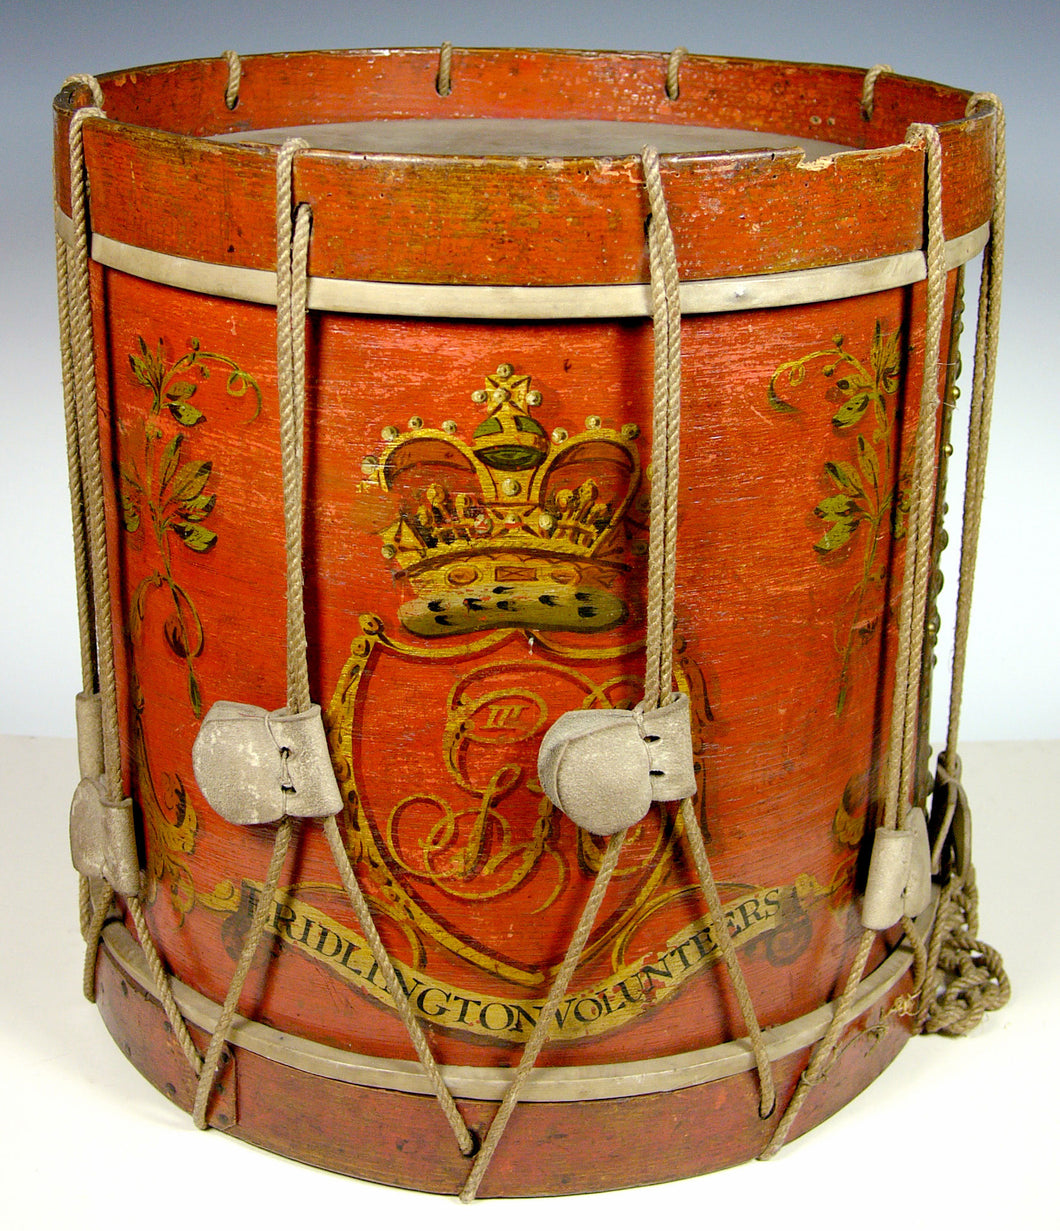 Side Drum of the Bridlington Volunteers by Robert Horne, Circa 1794